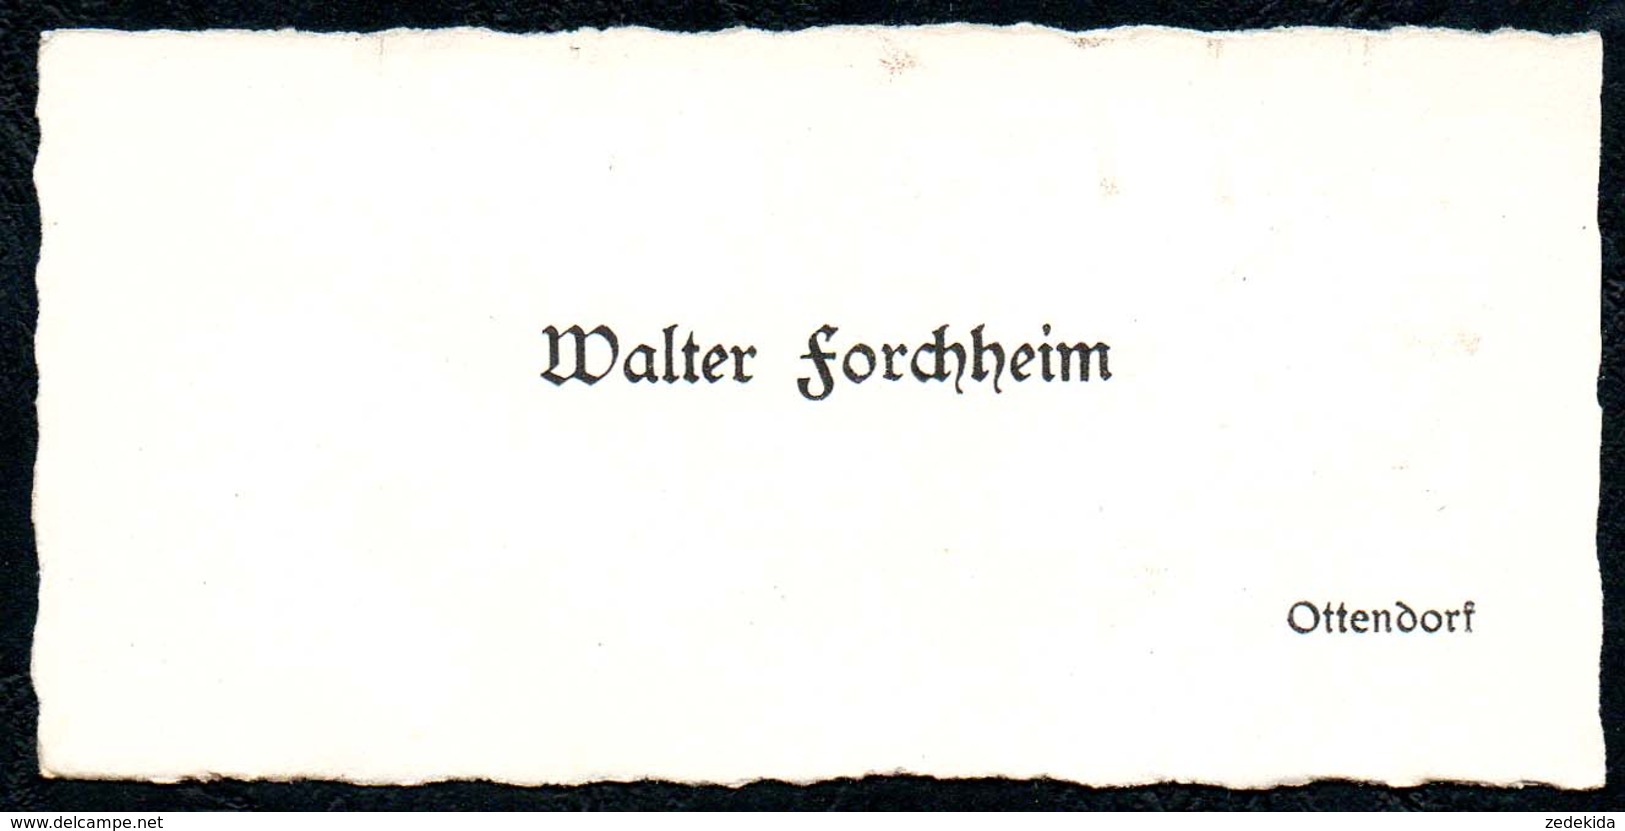 B7287 - Ottendorf - Walter Forchheim - Visitenkarte - Visitenkarten